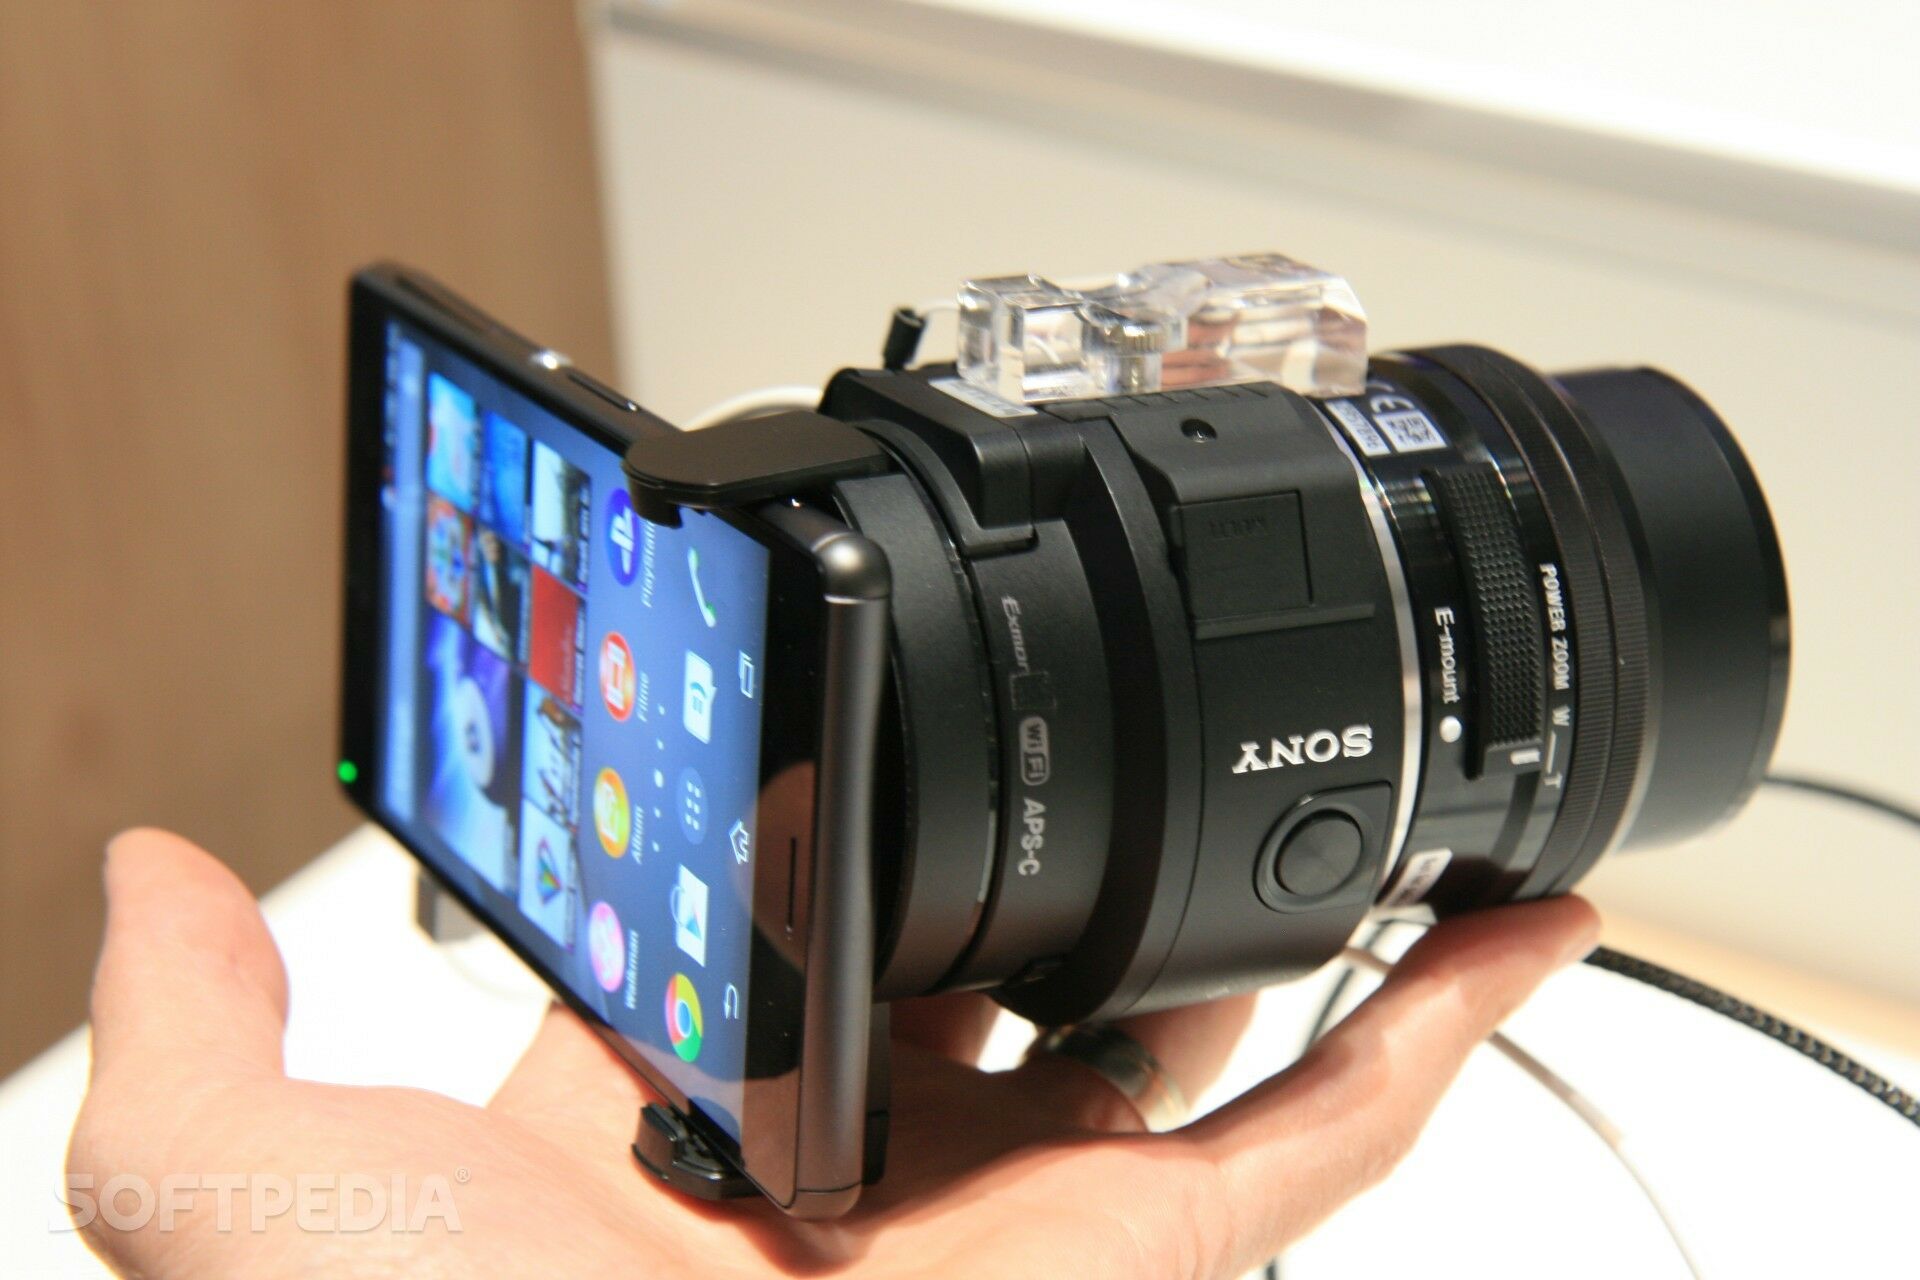 Определяет телефон как камеру. Sony qx1. Sony Ilce-qx1. Sony SMARTSHOT Ilce-qx1. Sony icle-qx1 e-Mount Interchangeable Lens Camera at IFA 2014.